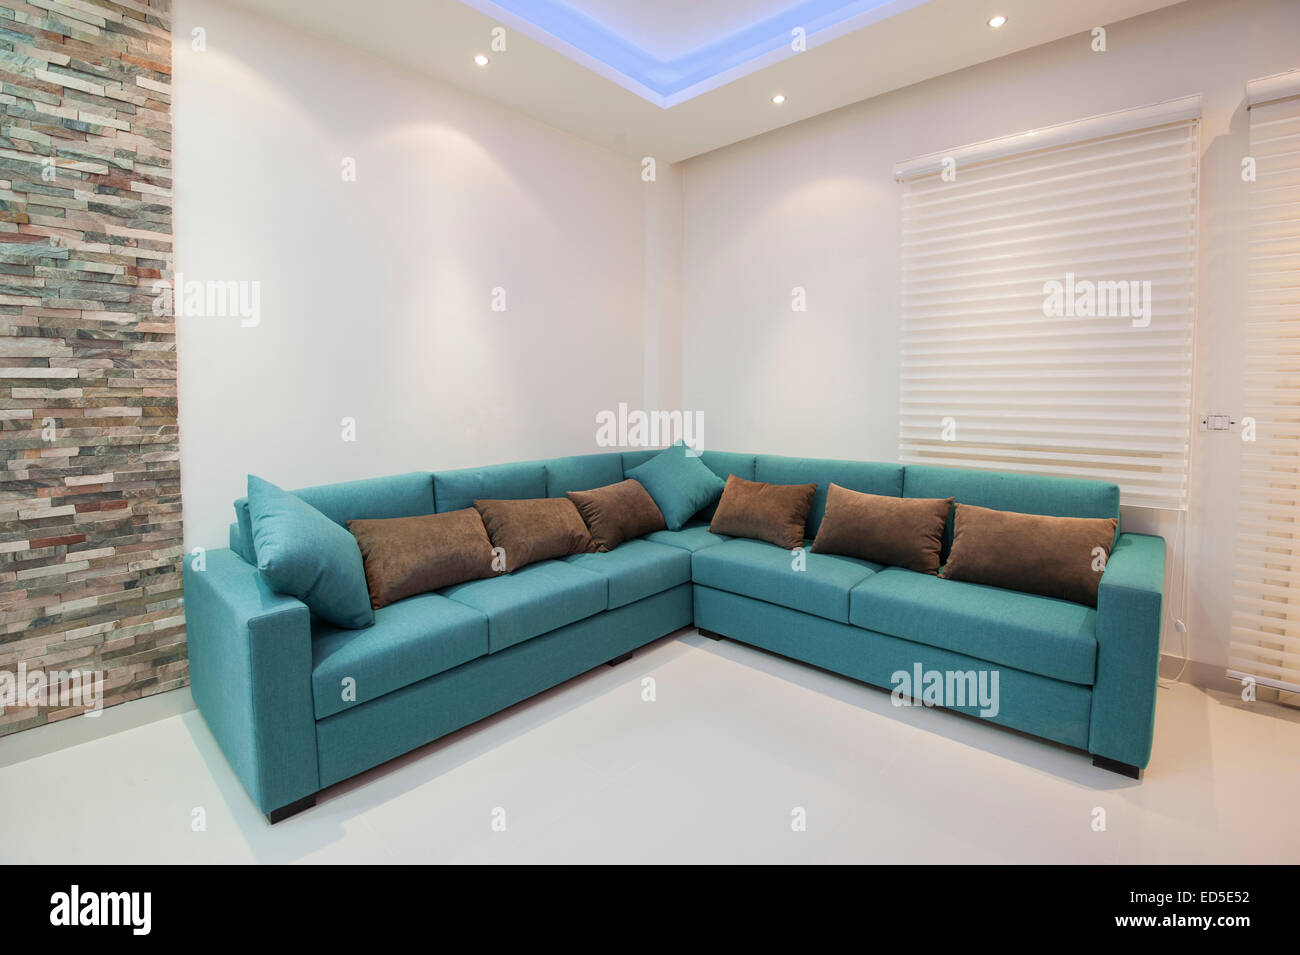 Canapé d'angle avec coussins de luxe appartement salle de séjour Banque D'Images